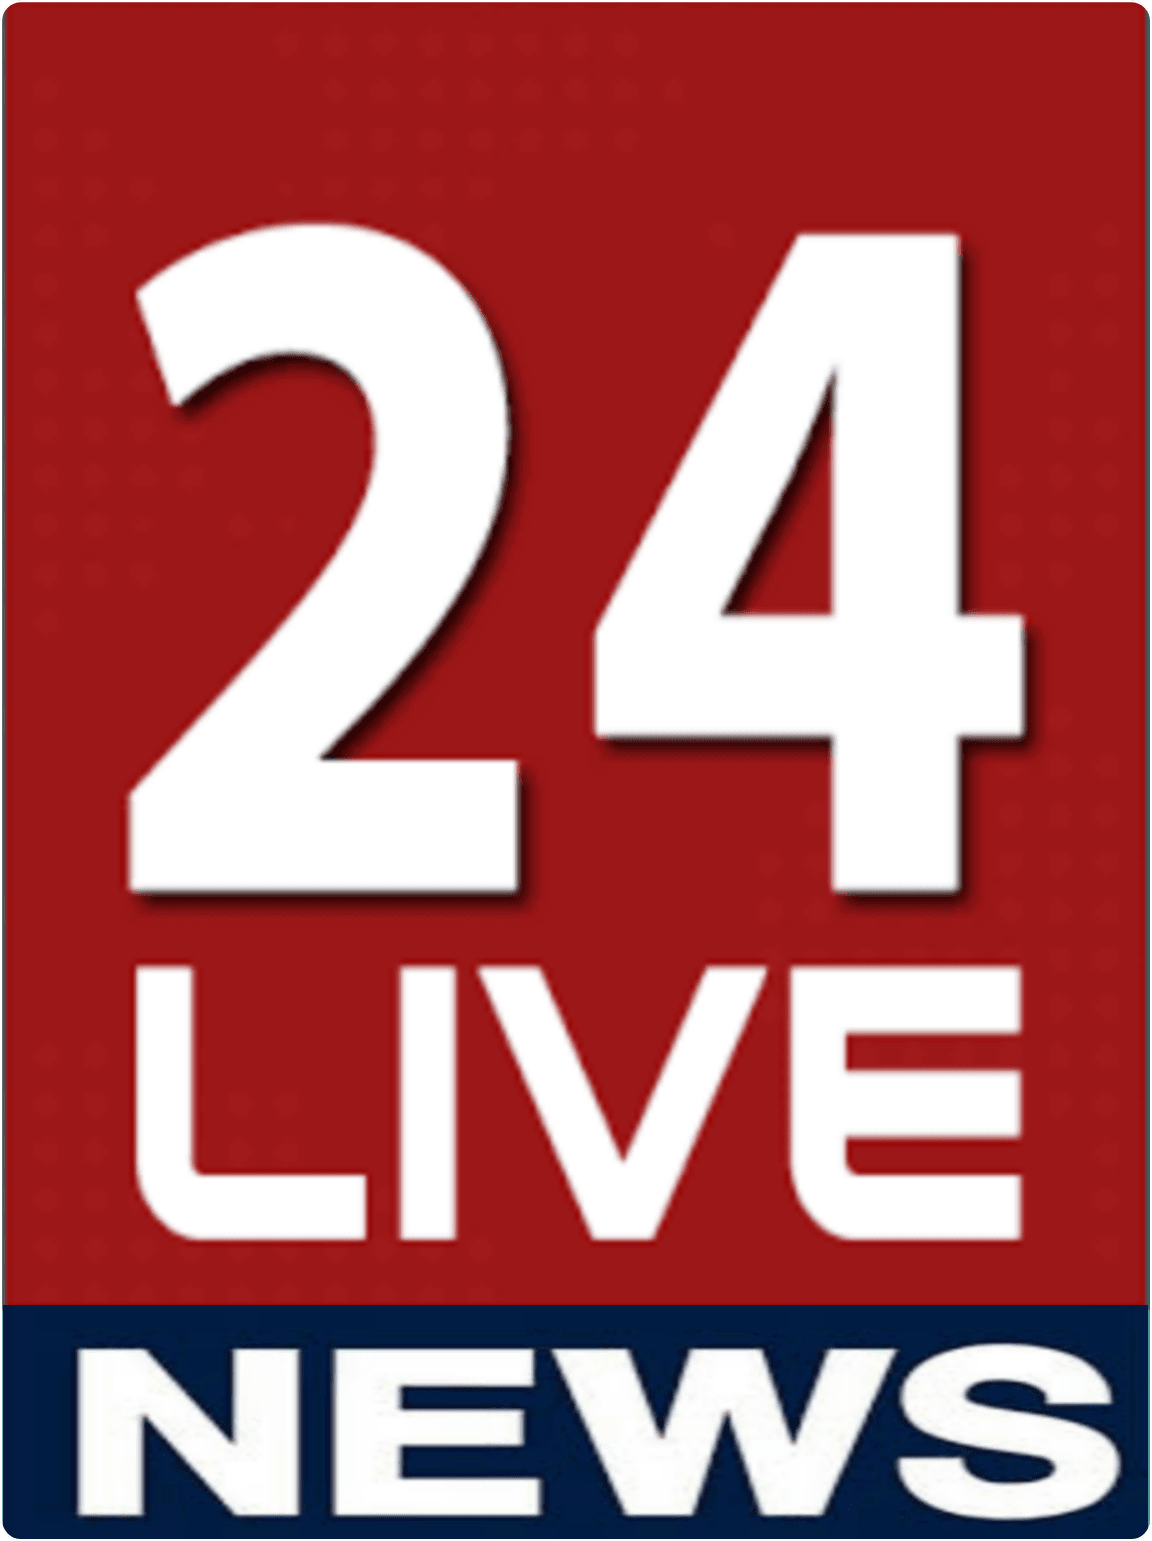 24 Live News